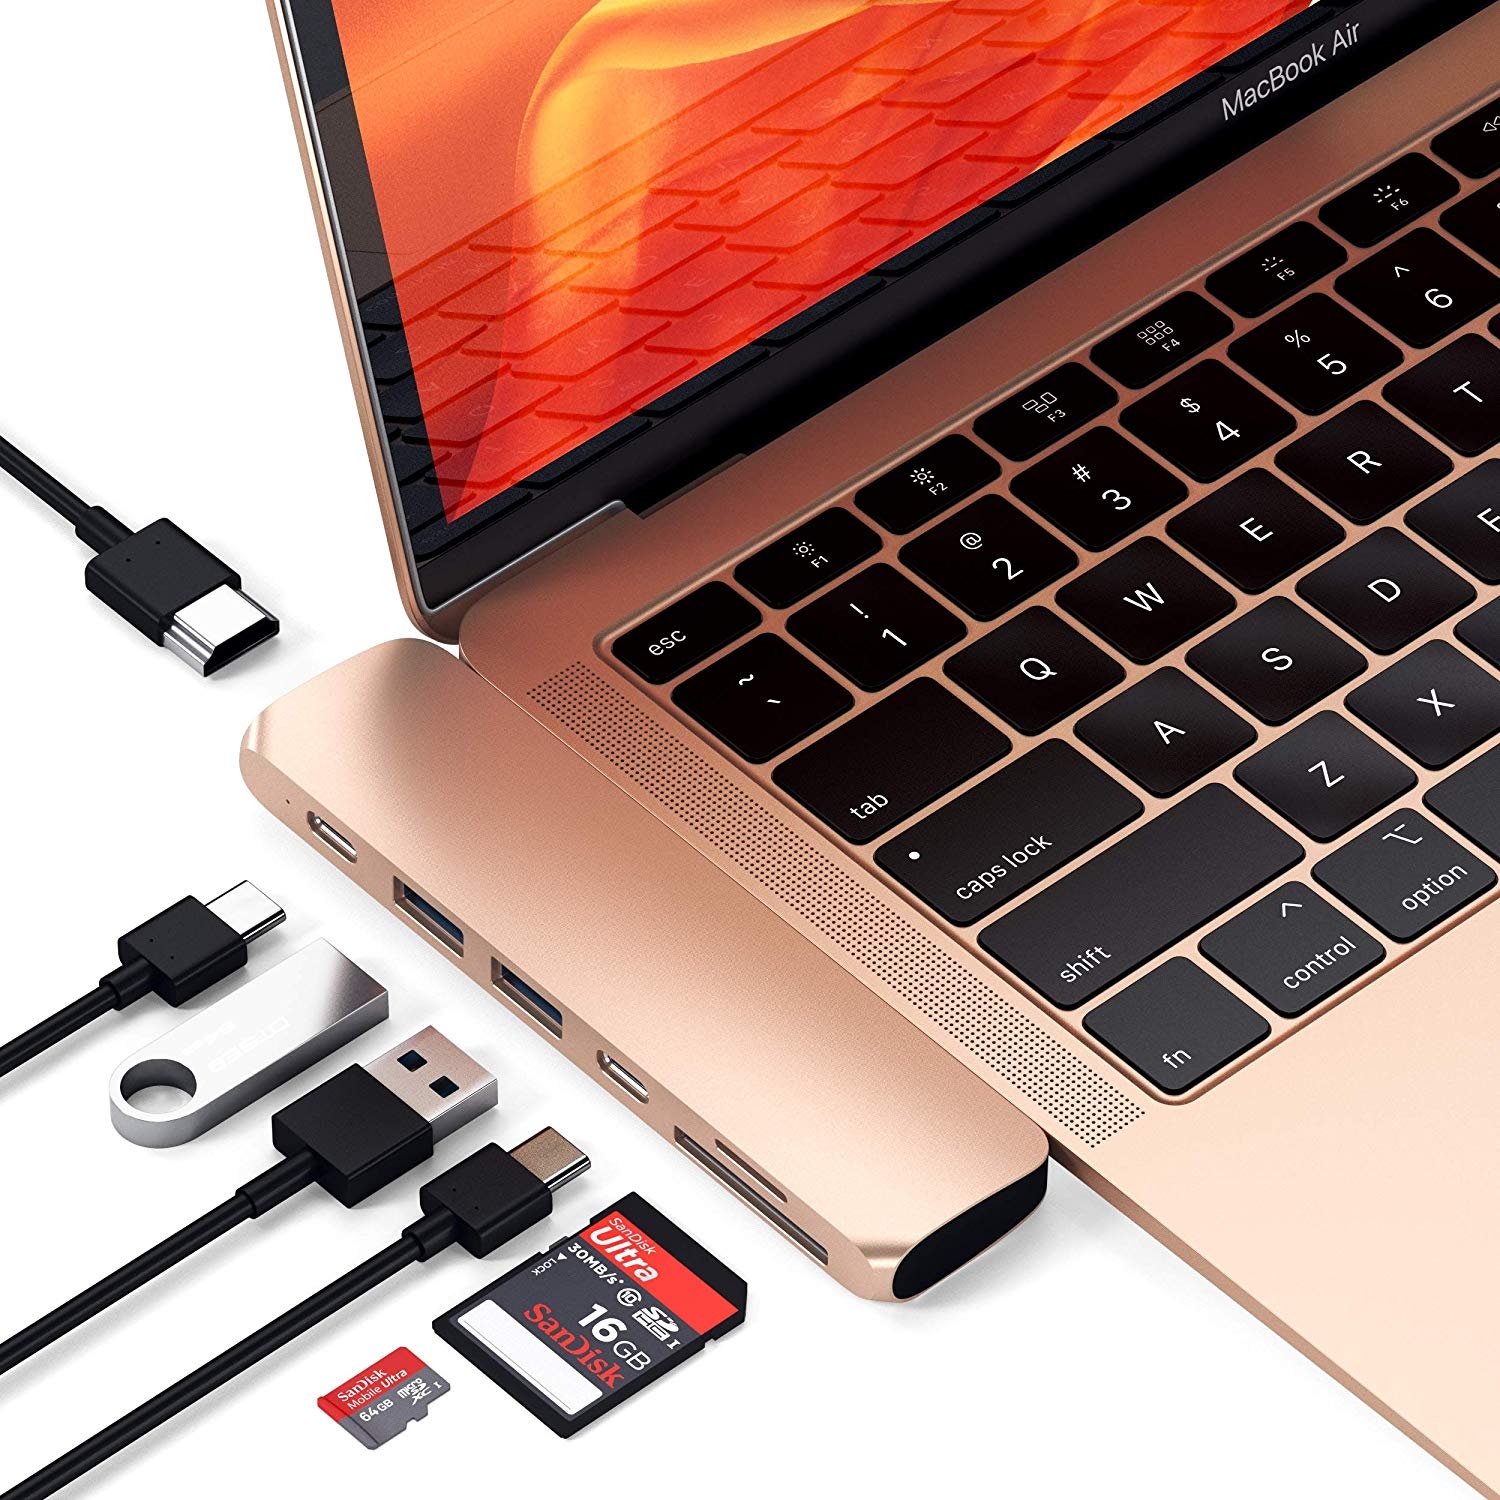 MacBook Pro Almayın, Yeni Modeli Bekleyin - Technopat